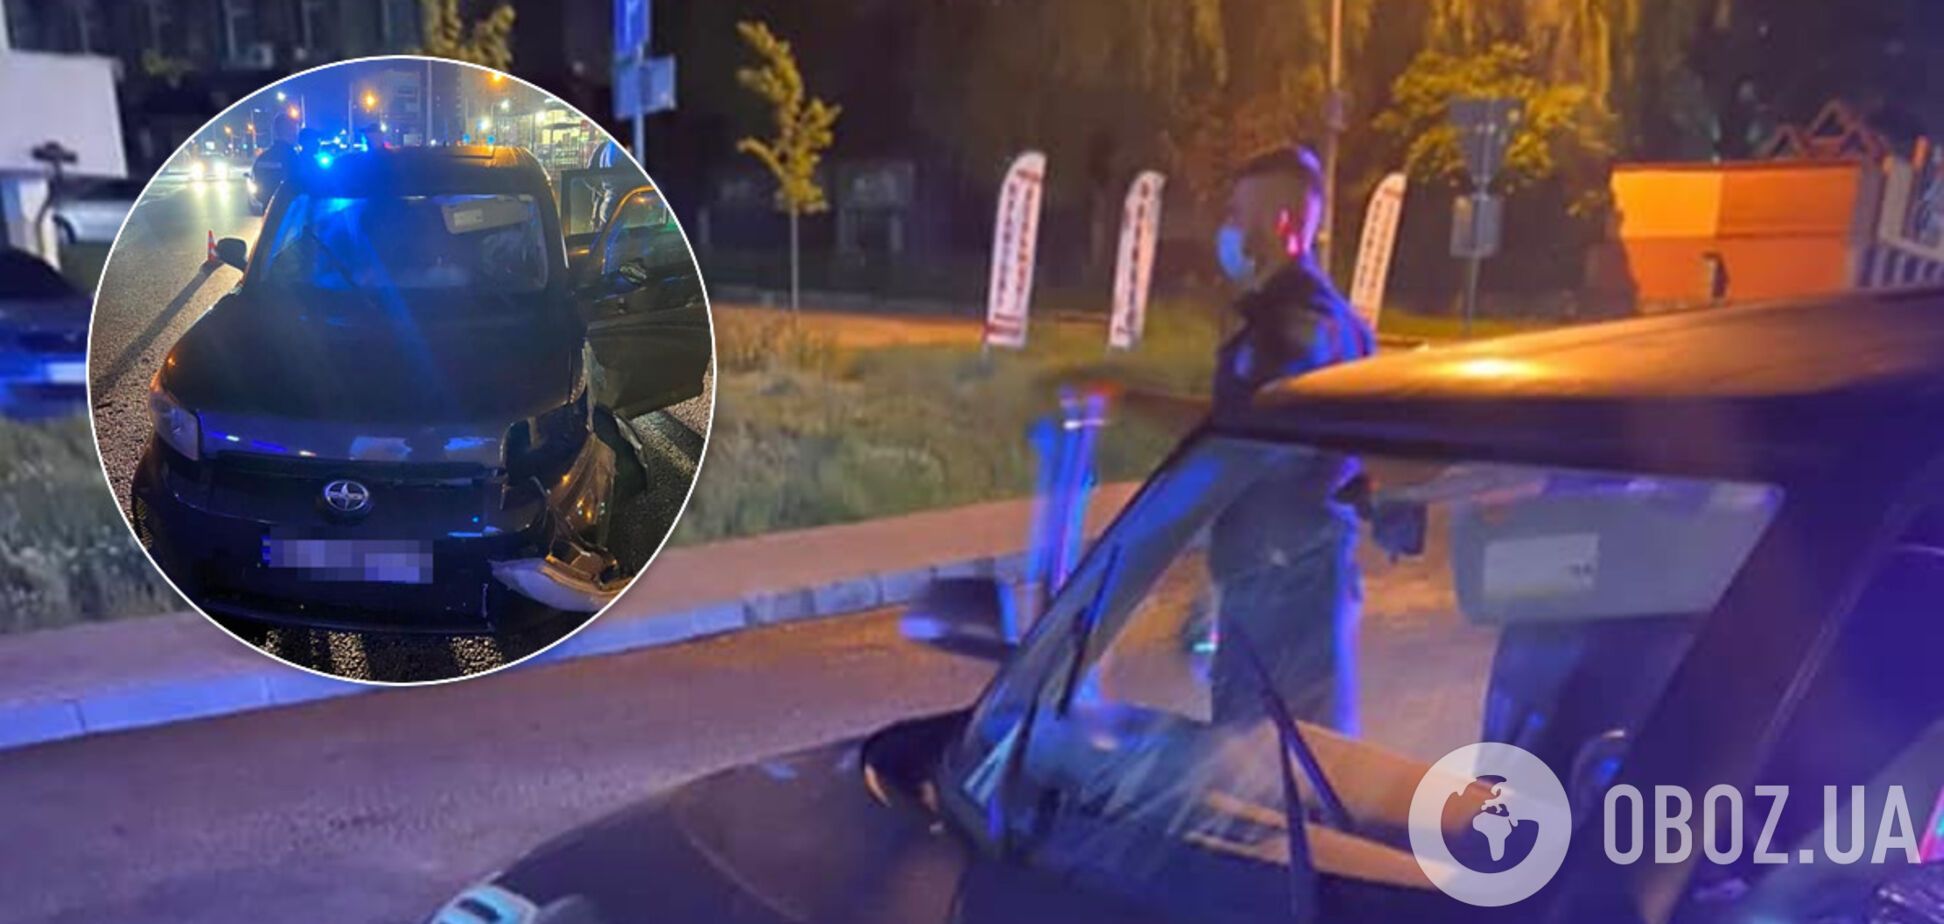 Во Львове водитель без прав убегал от полиции и сбил светофор: в салоне был маленький ребенок. Фото